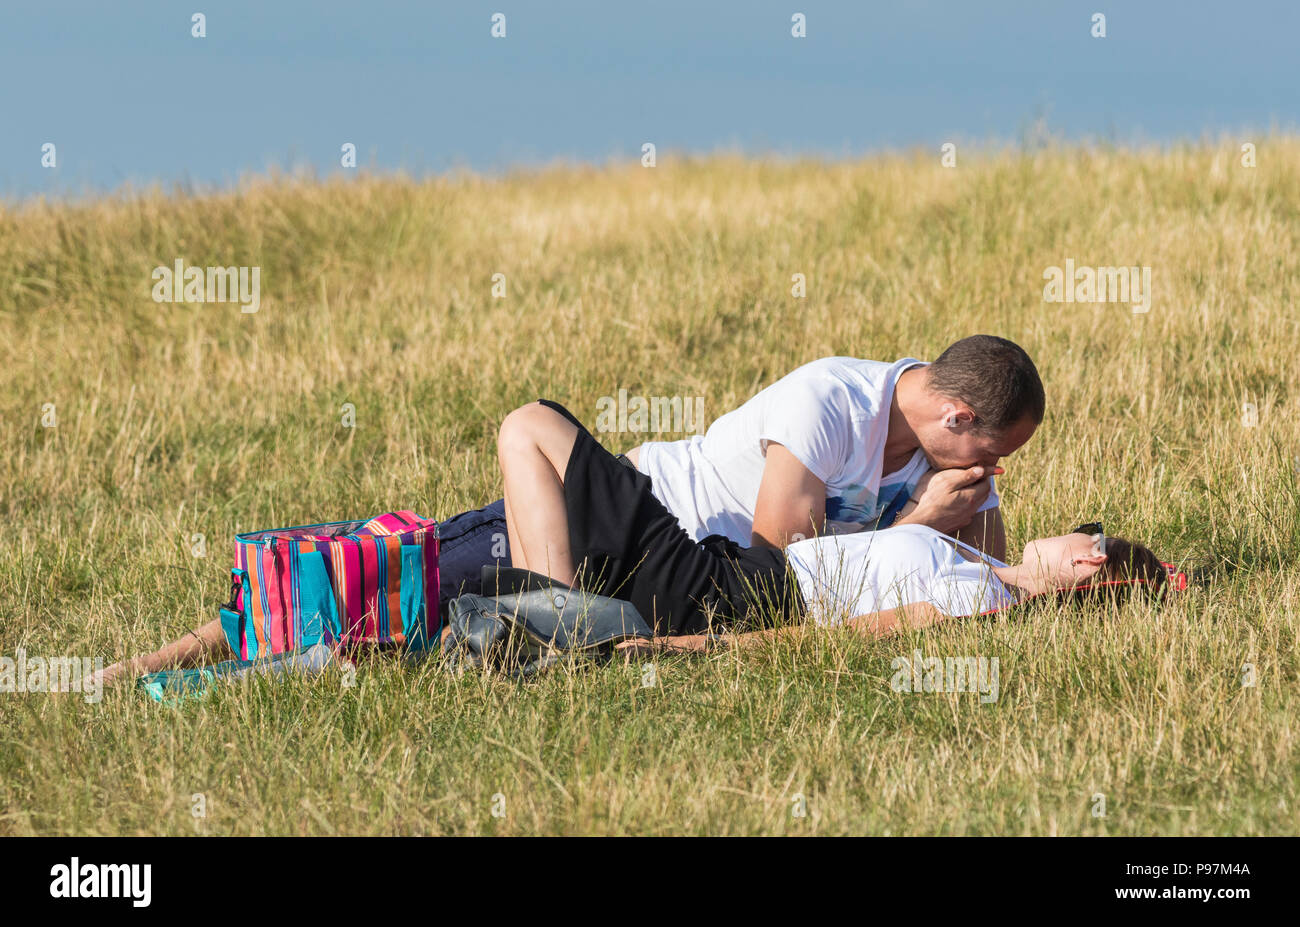 Jeune homme et femme fixant ensemble dans un champ sur une chaude soirée d'été le partage d'un moment intime. Jeune couple en UK. Remarque:ils peuvent ne pas être un couple. Banque D'Images